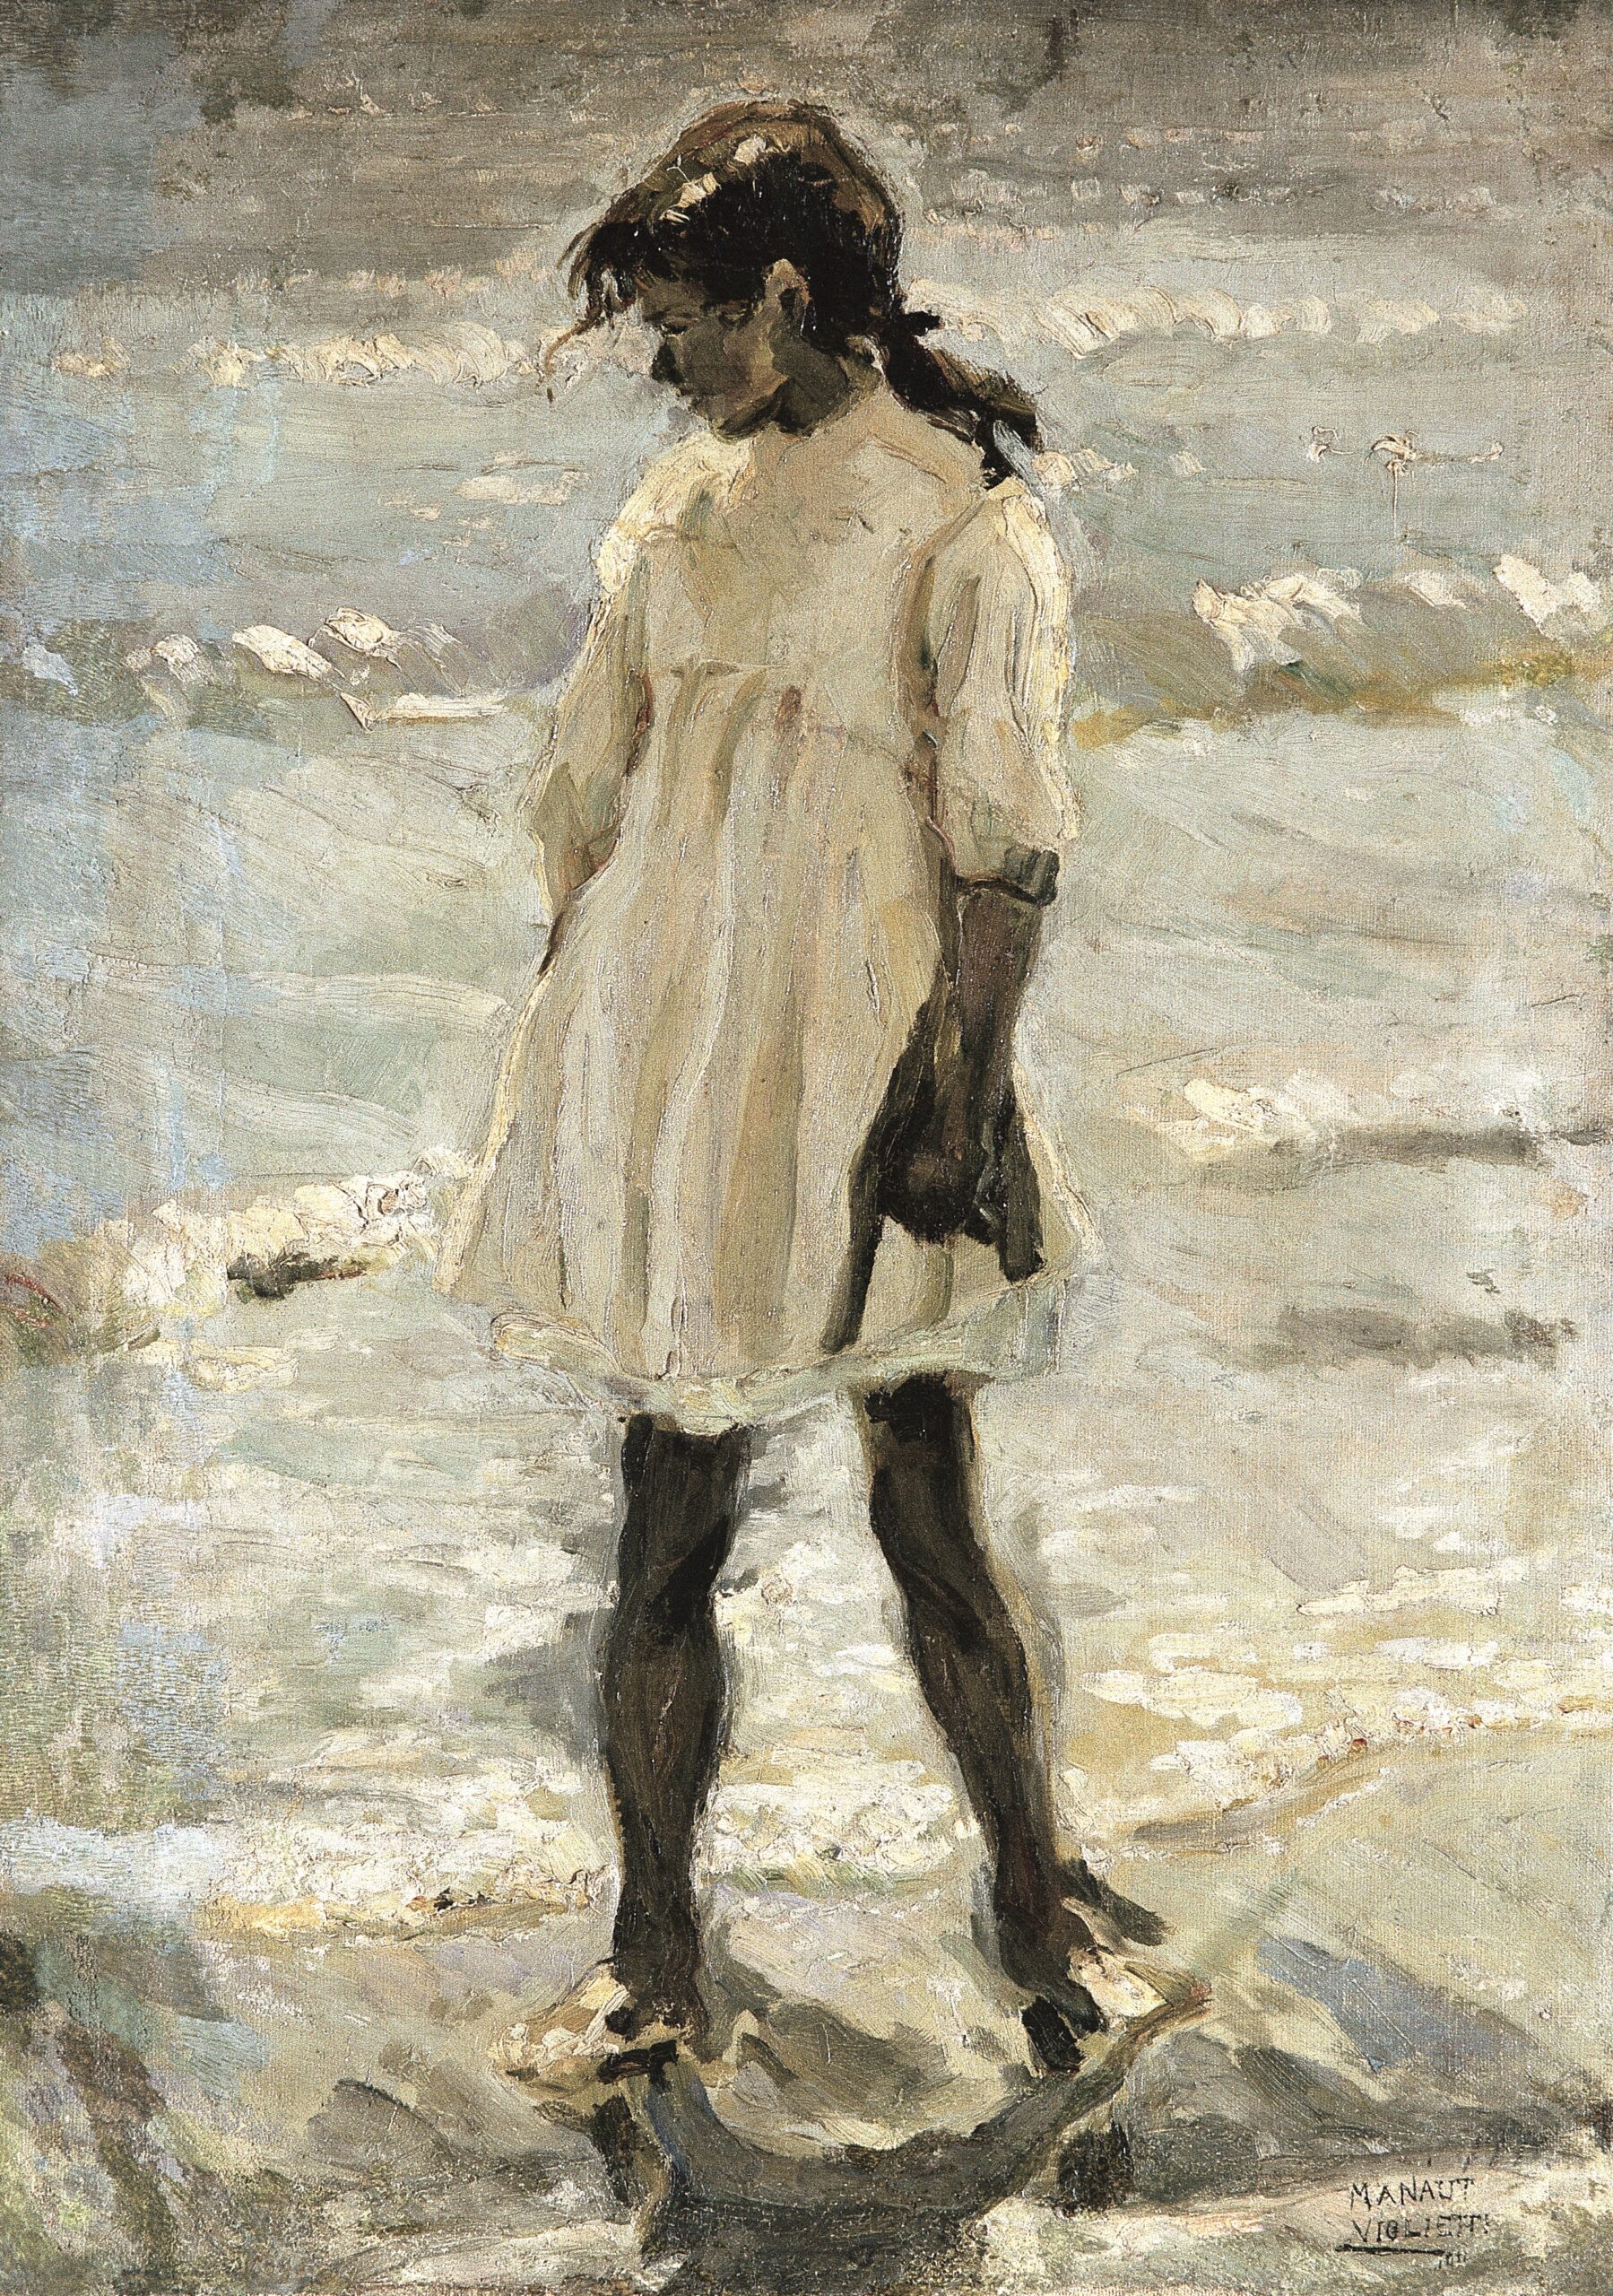 Pintura de José Manaut titulada Niñita (de blanco), Valencia, 1917. Óleo sobre lienzo.